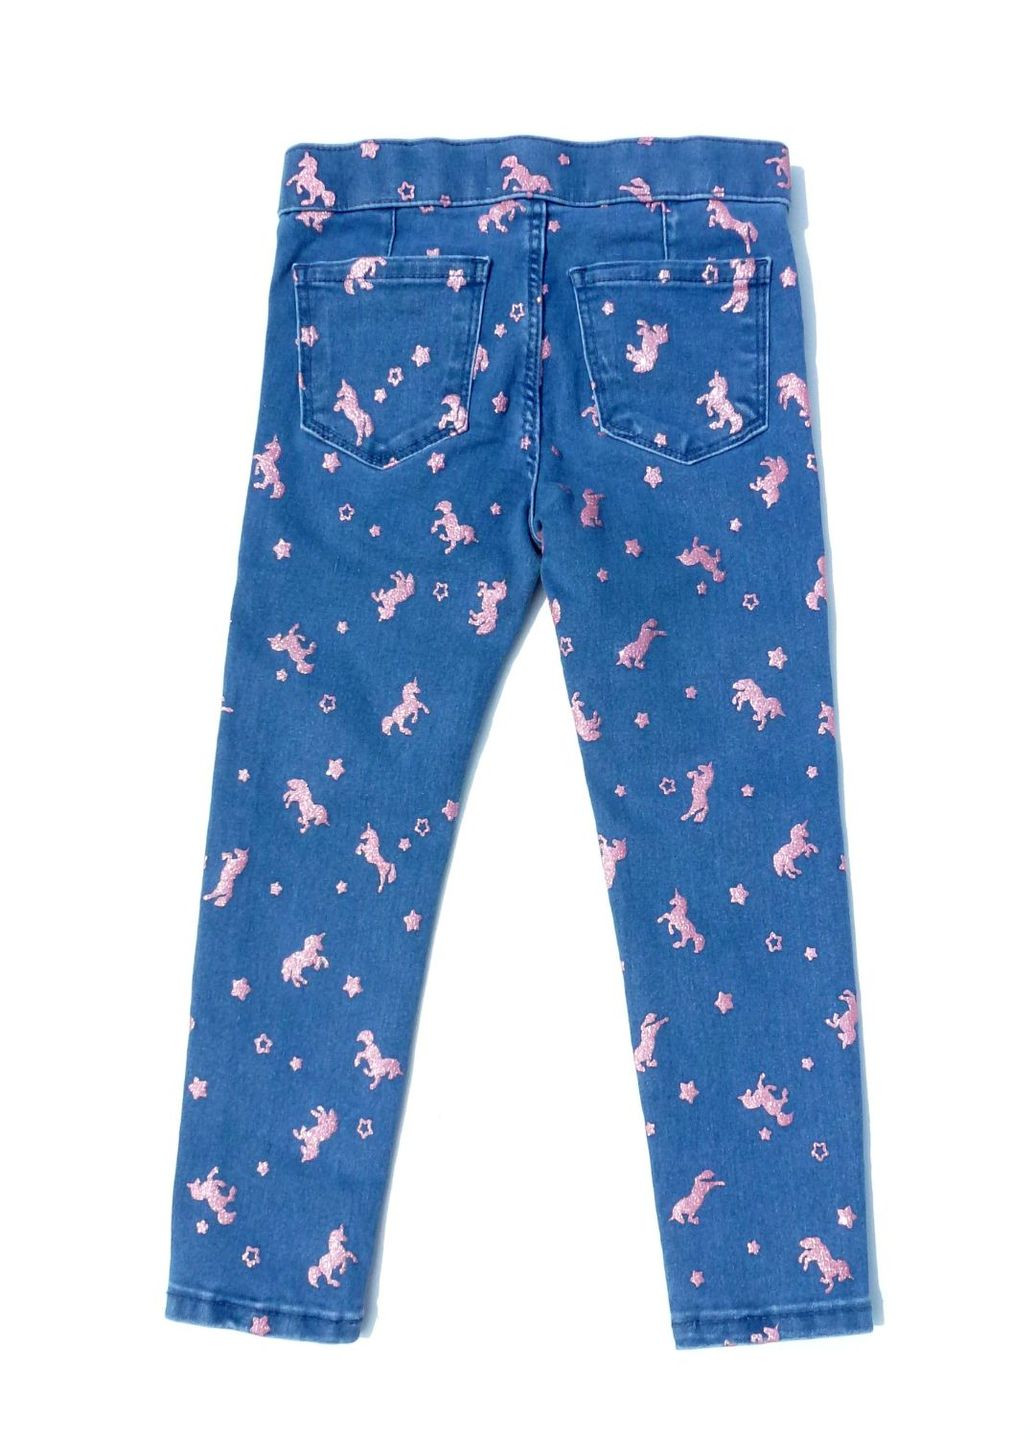 Голубые демисезонные прямые джинсы детские с оригинальной аппликацией Lefties